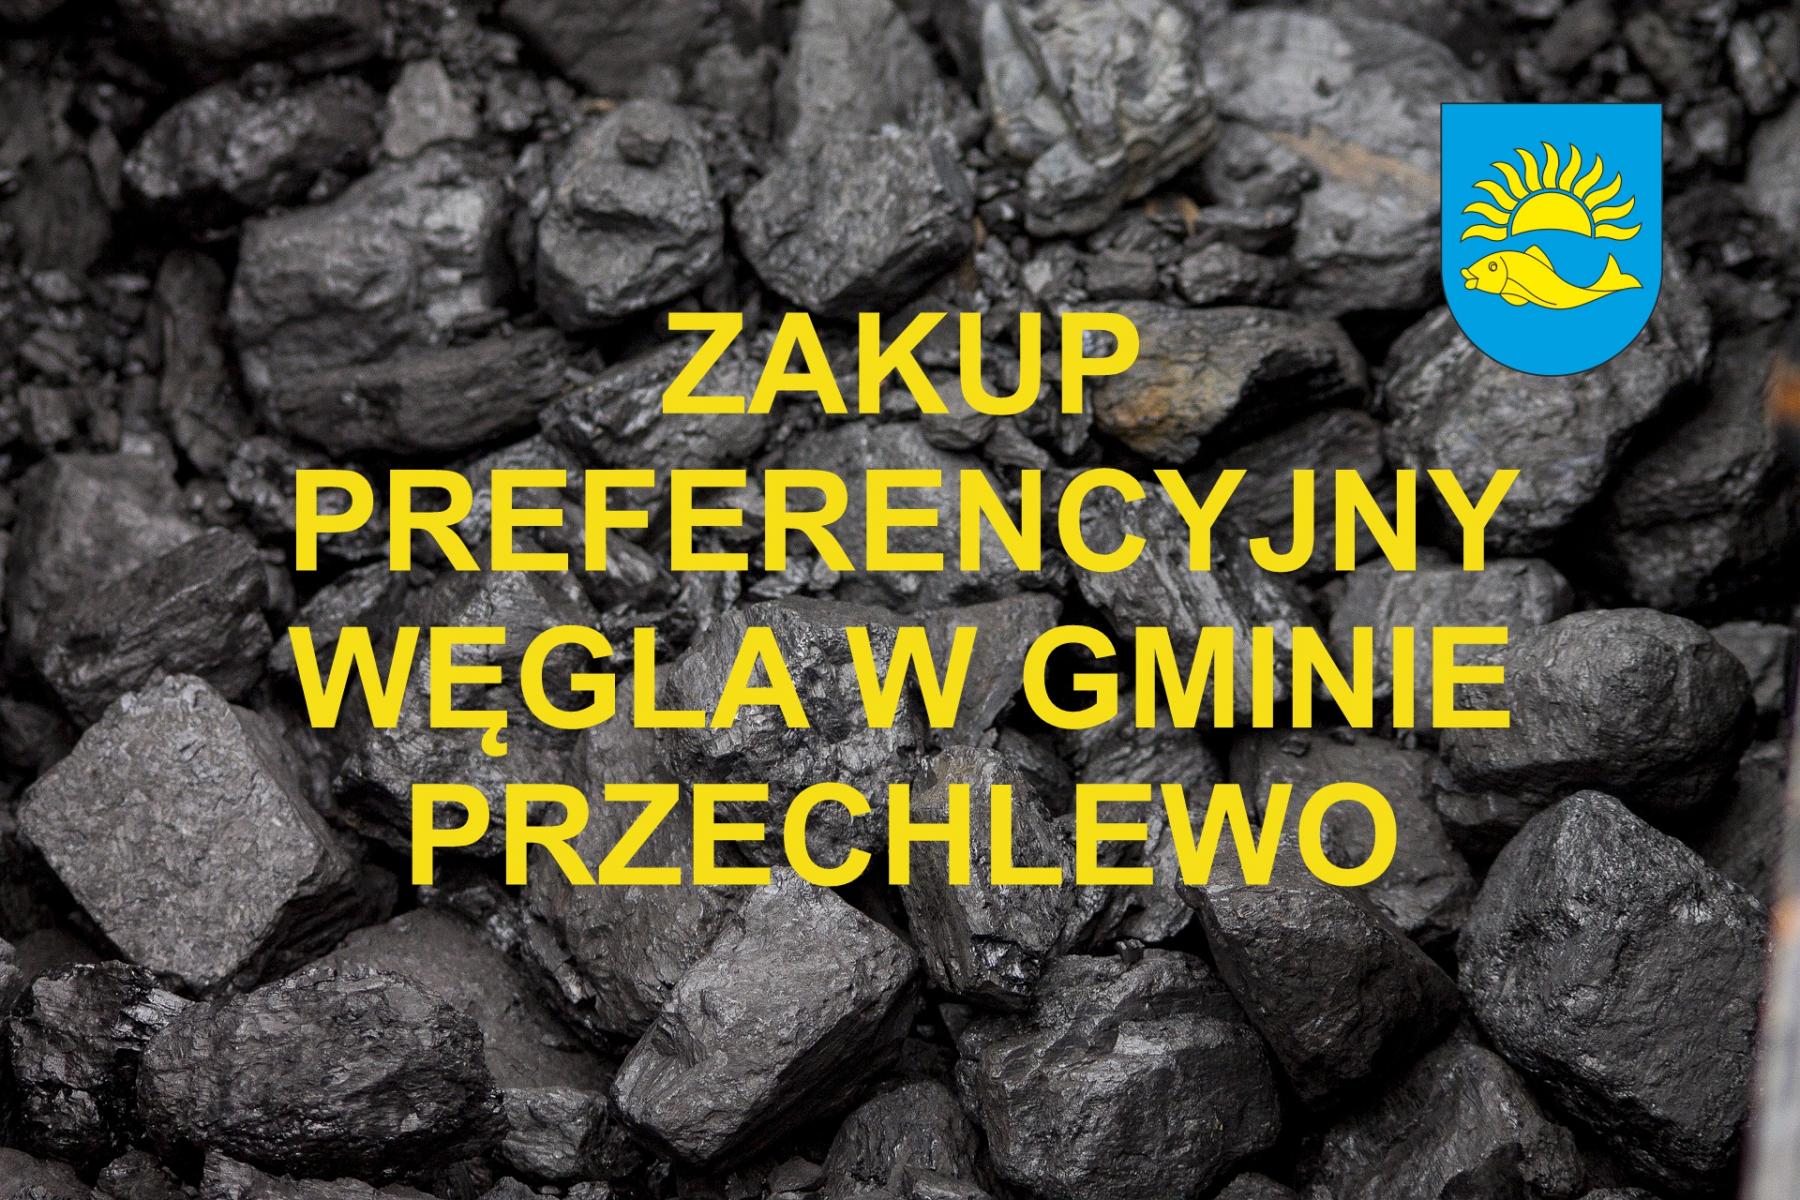 Zakup preferencyjny węgla w gminie Przechlewo - wnioski do dnia 17 kwietnia 2023 r.